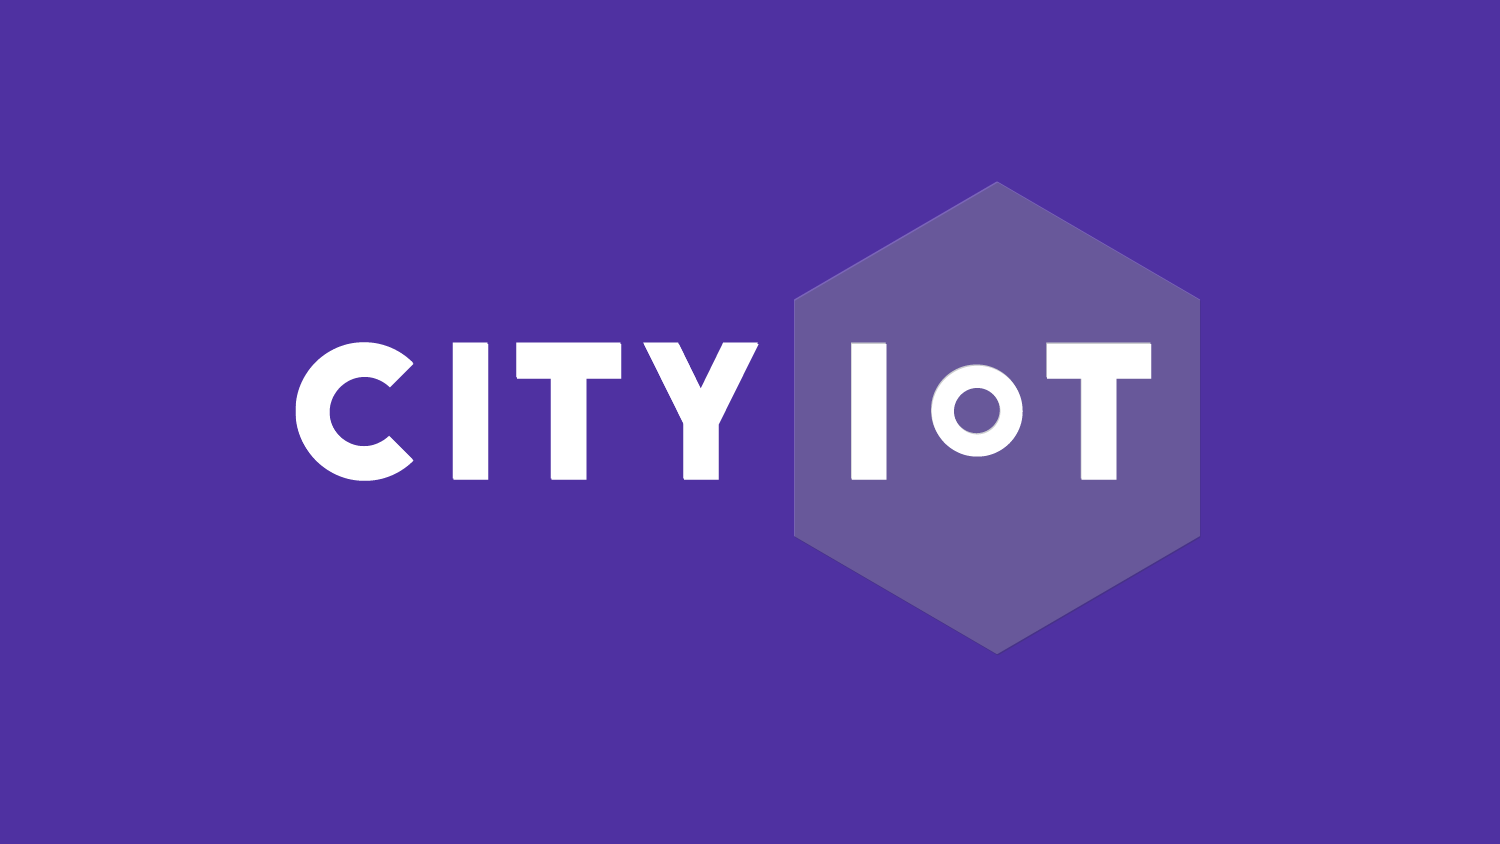 Mainostoimisto Design Inspiksen suunnittelema logo City IoT:lle